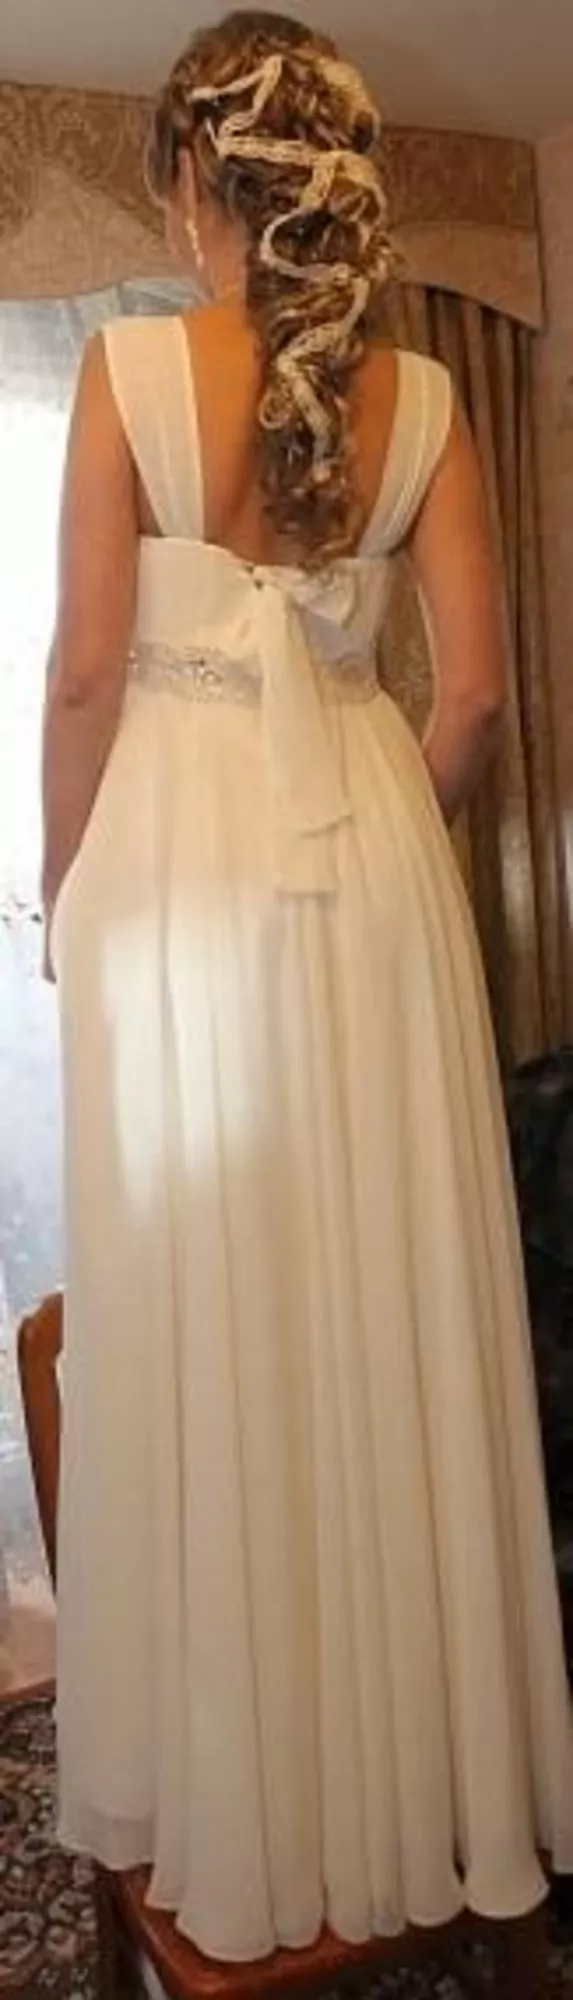 Продам свадебное платье в стиле ампир,  размер 44-46. Цвет айвори 3